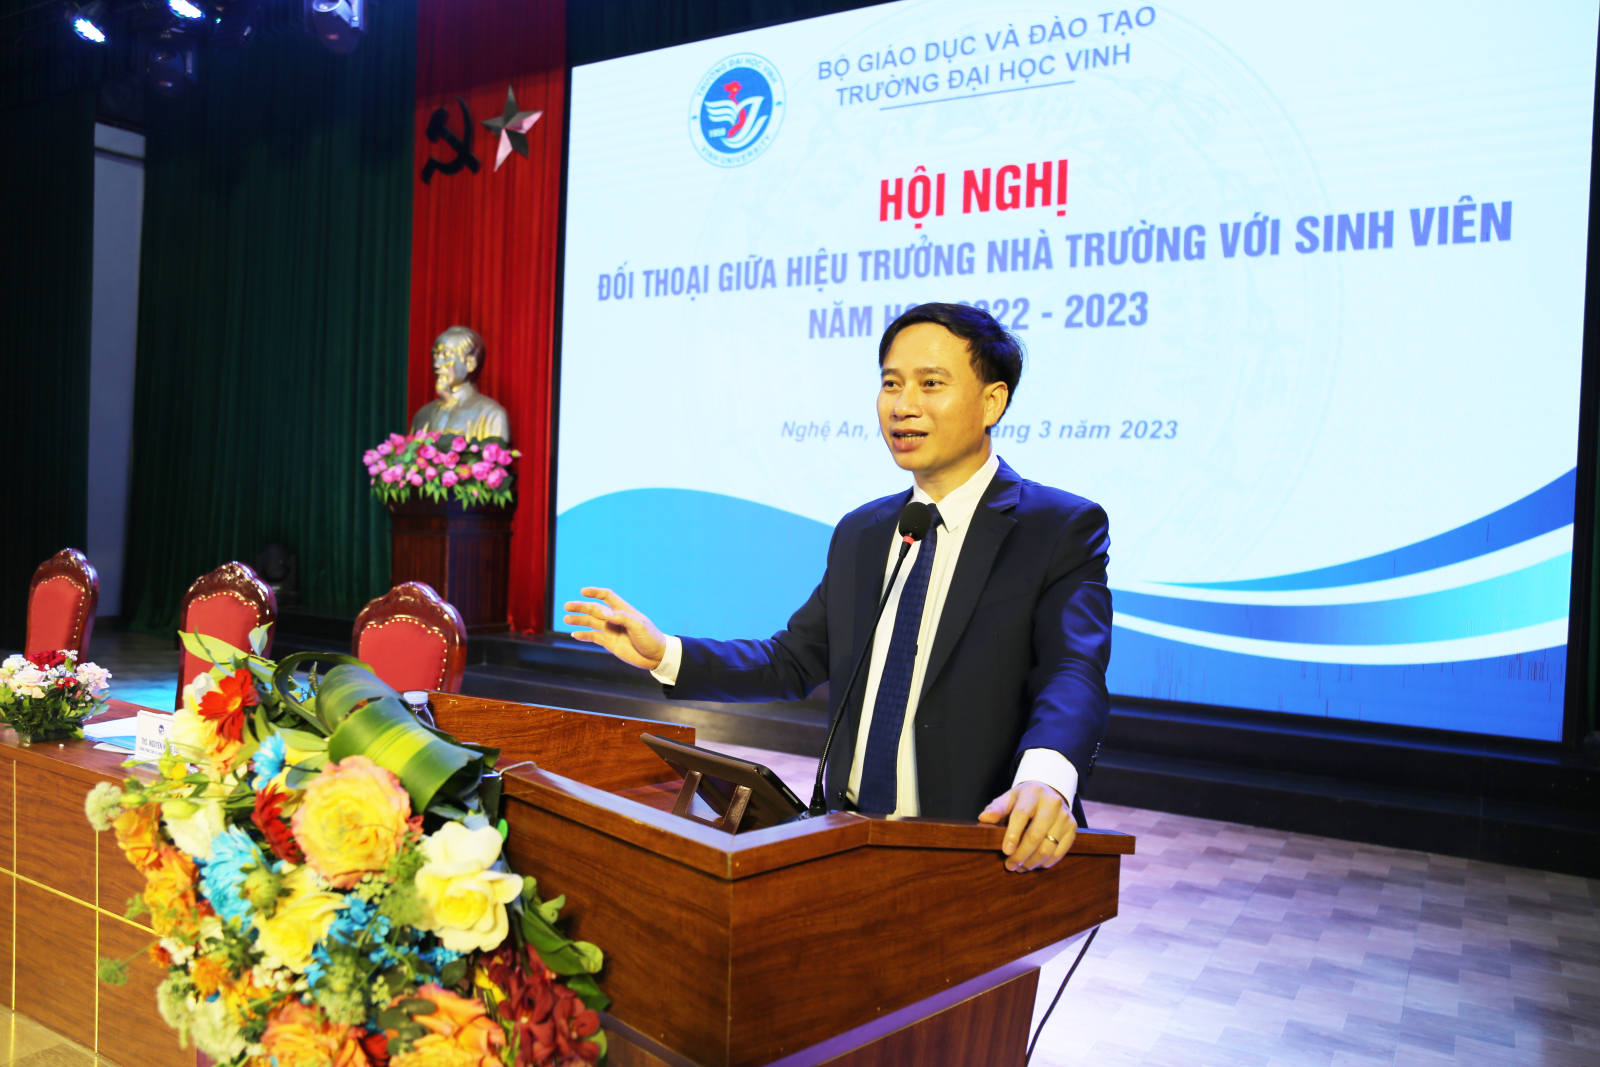 Hội nghị đối thoại giữa Hiệu trưởng Trường Đại học Vinh với sinh viên năm học 2022 - 2023